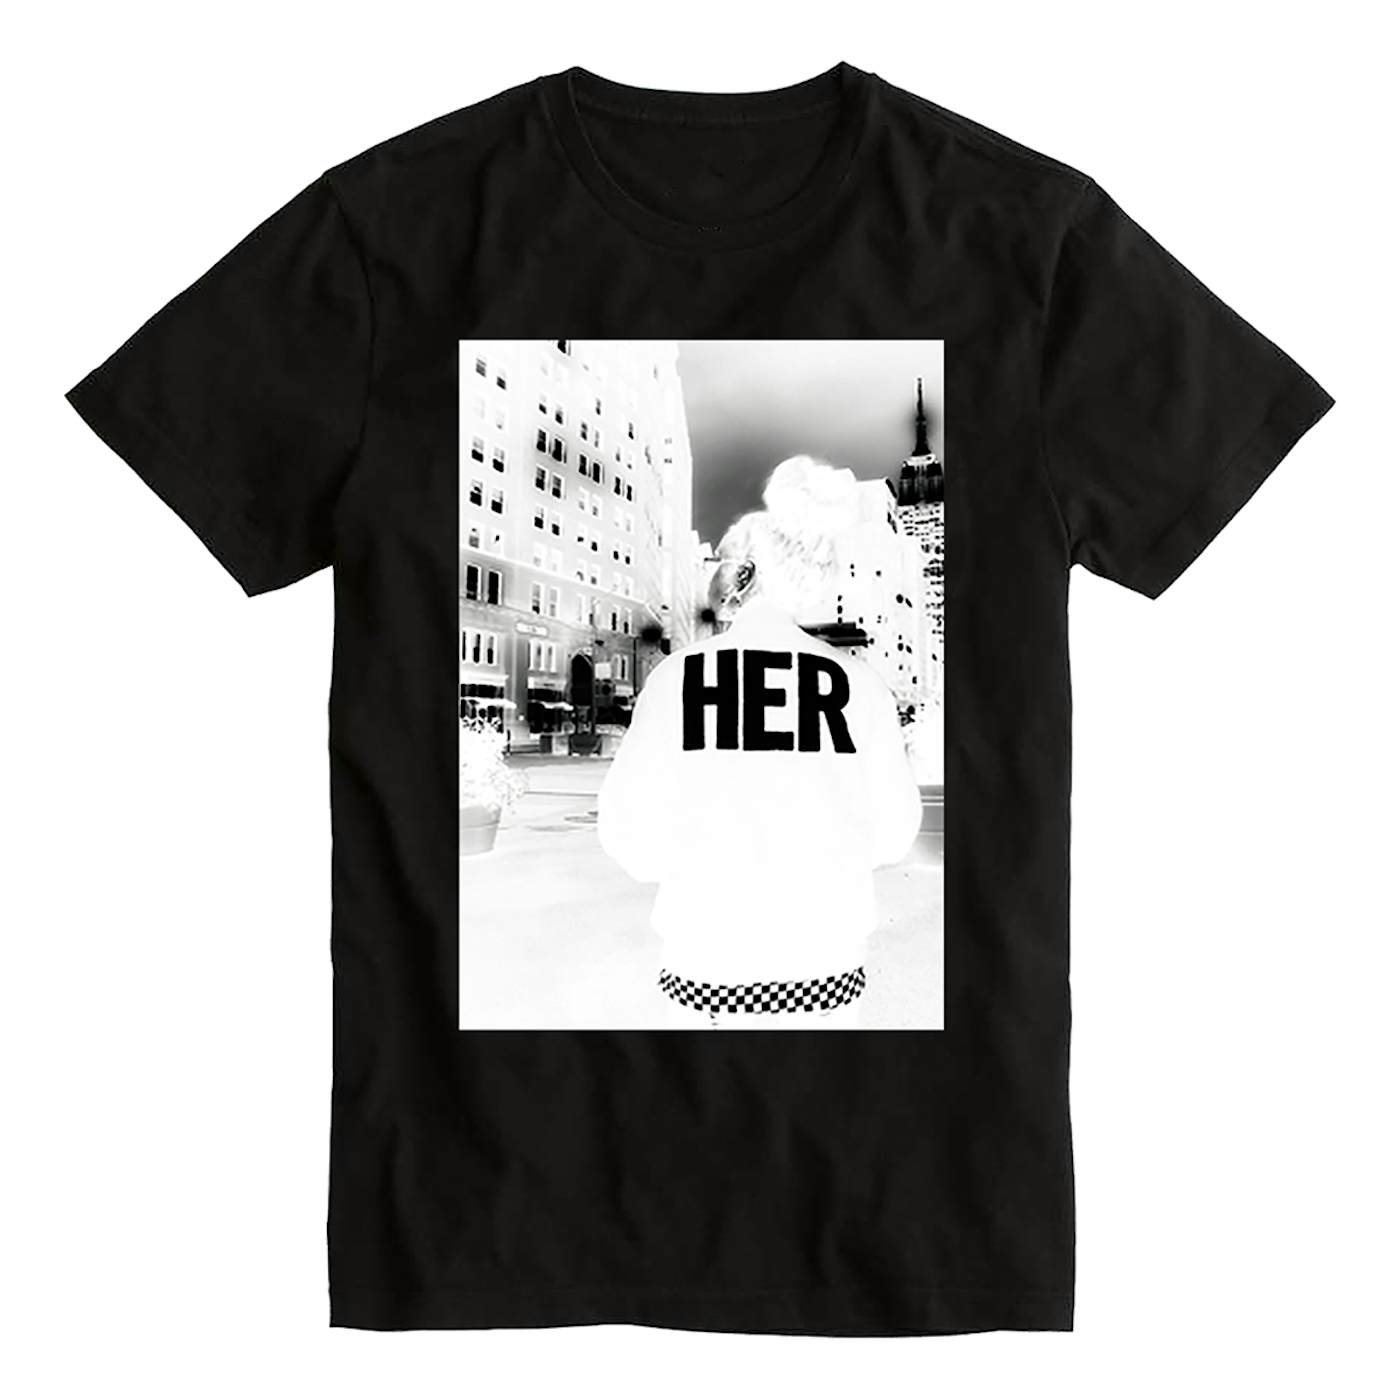 H.E.R. Polaroid T-shirt